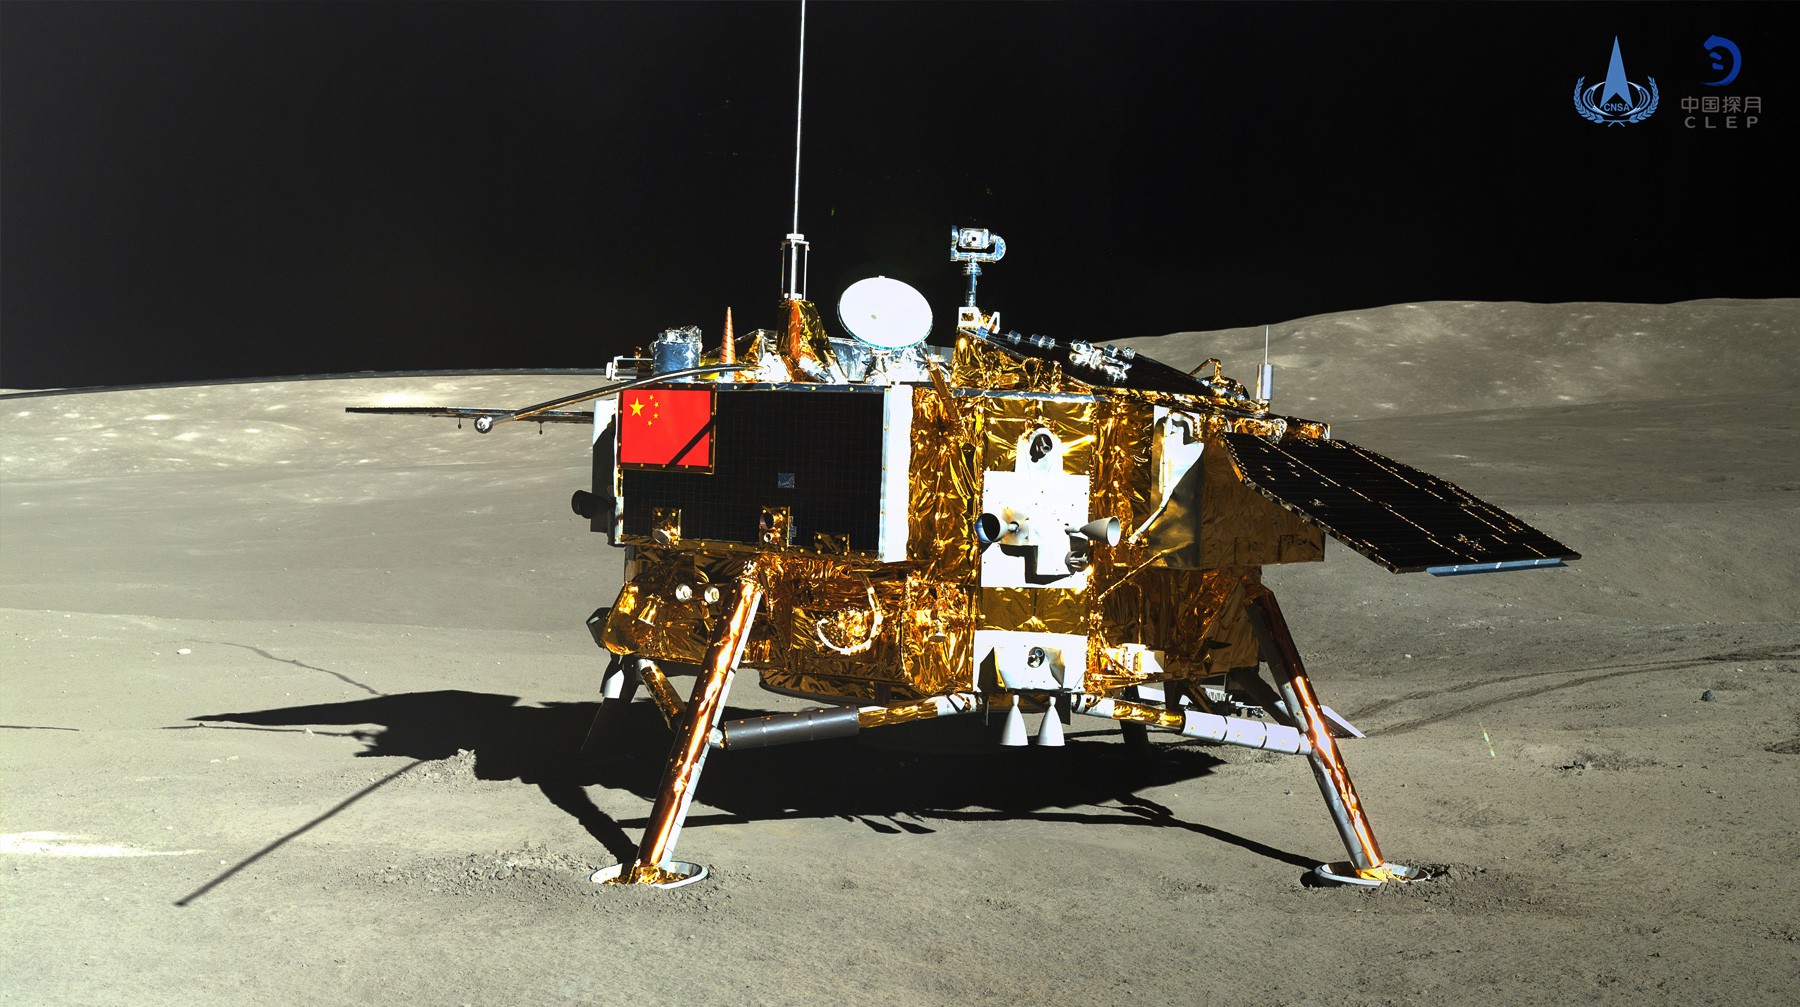 Dailystorm - Китайцы успешно провели сельскохозяйственный эксперимент на лунном зонде «Чанъэ-4»